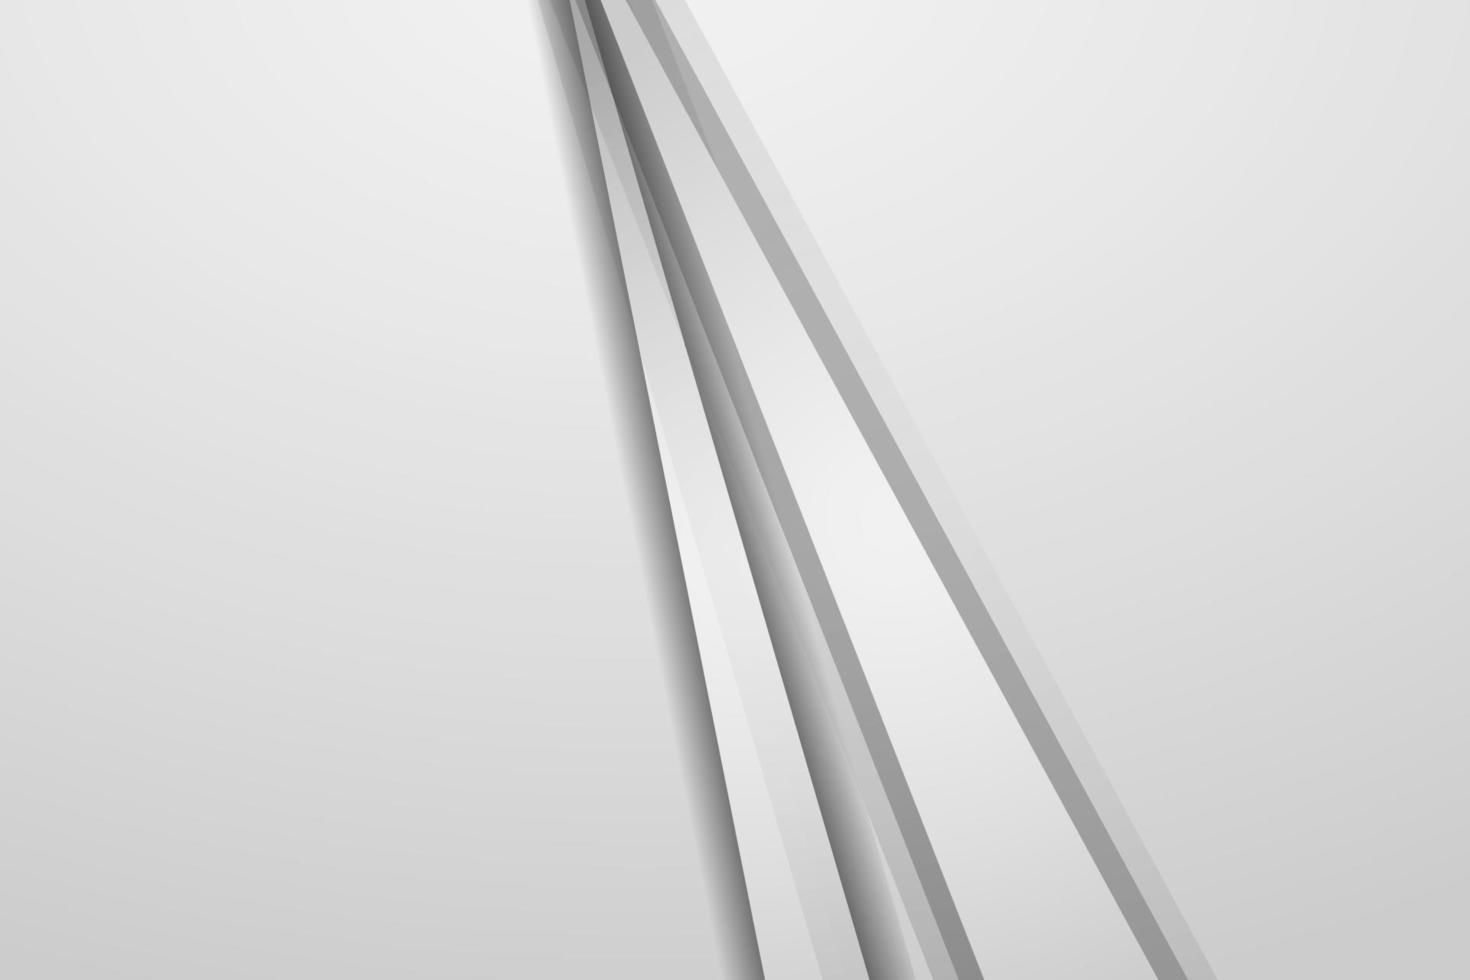 fondo blanco abstracto con diseño moderno gris vector